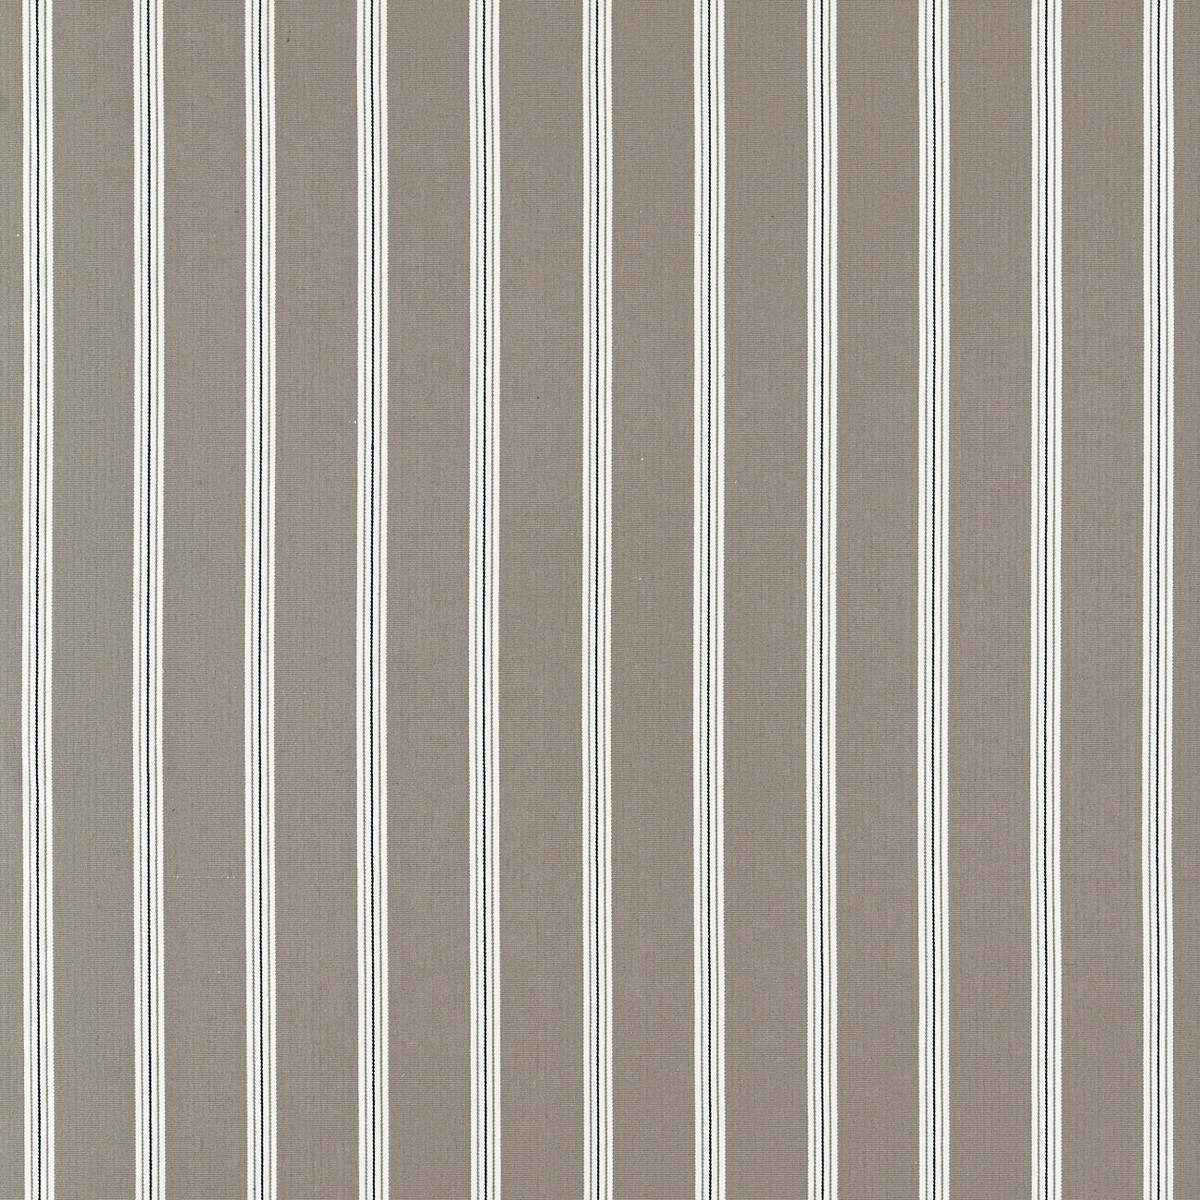 Knightsbridge Charcoal/Linen Fabric by Clarke & Clarke